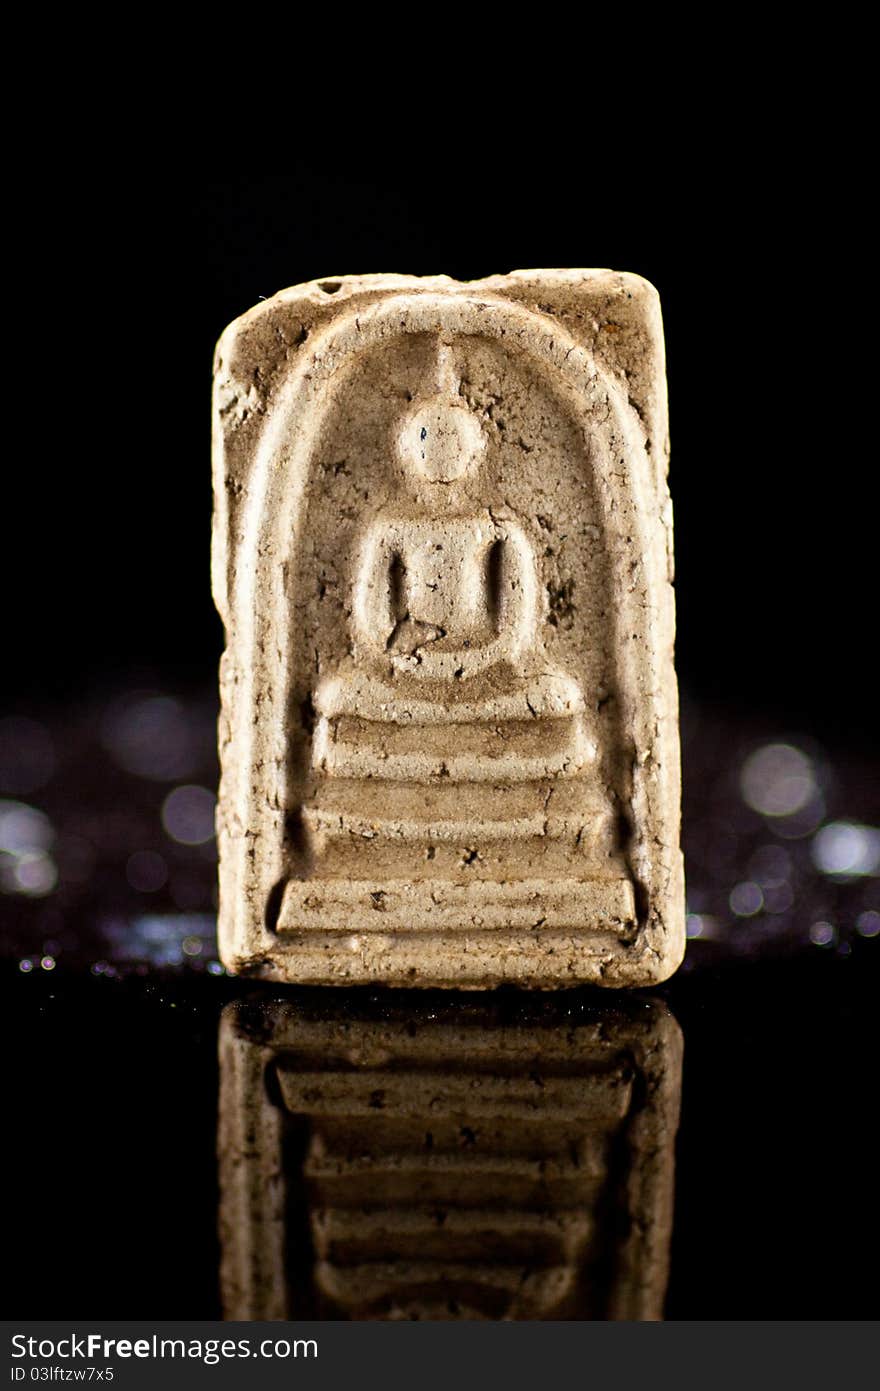 Small buddha reflect on black back ground.